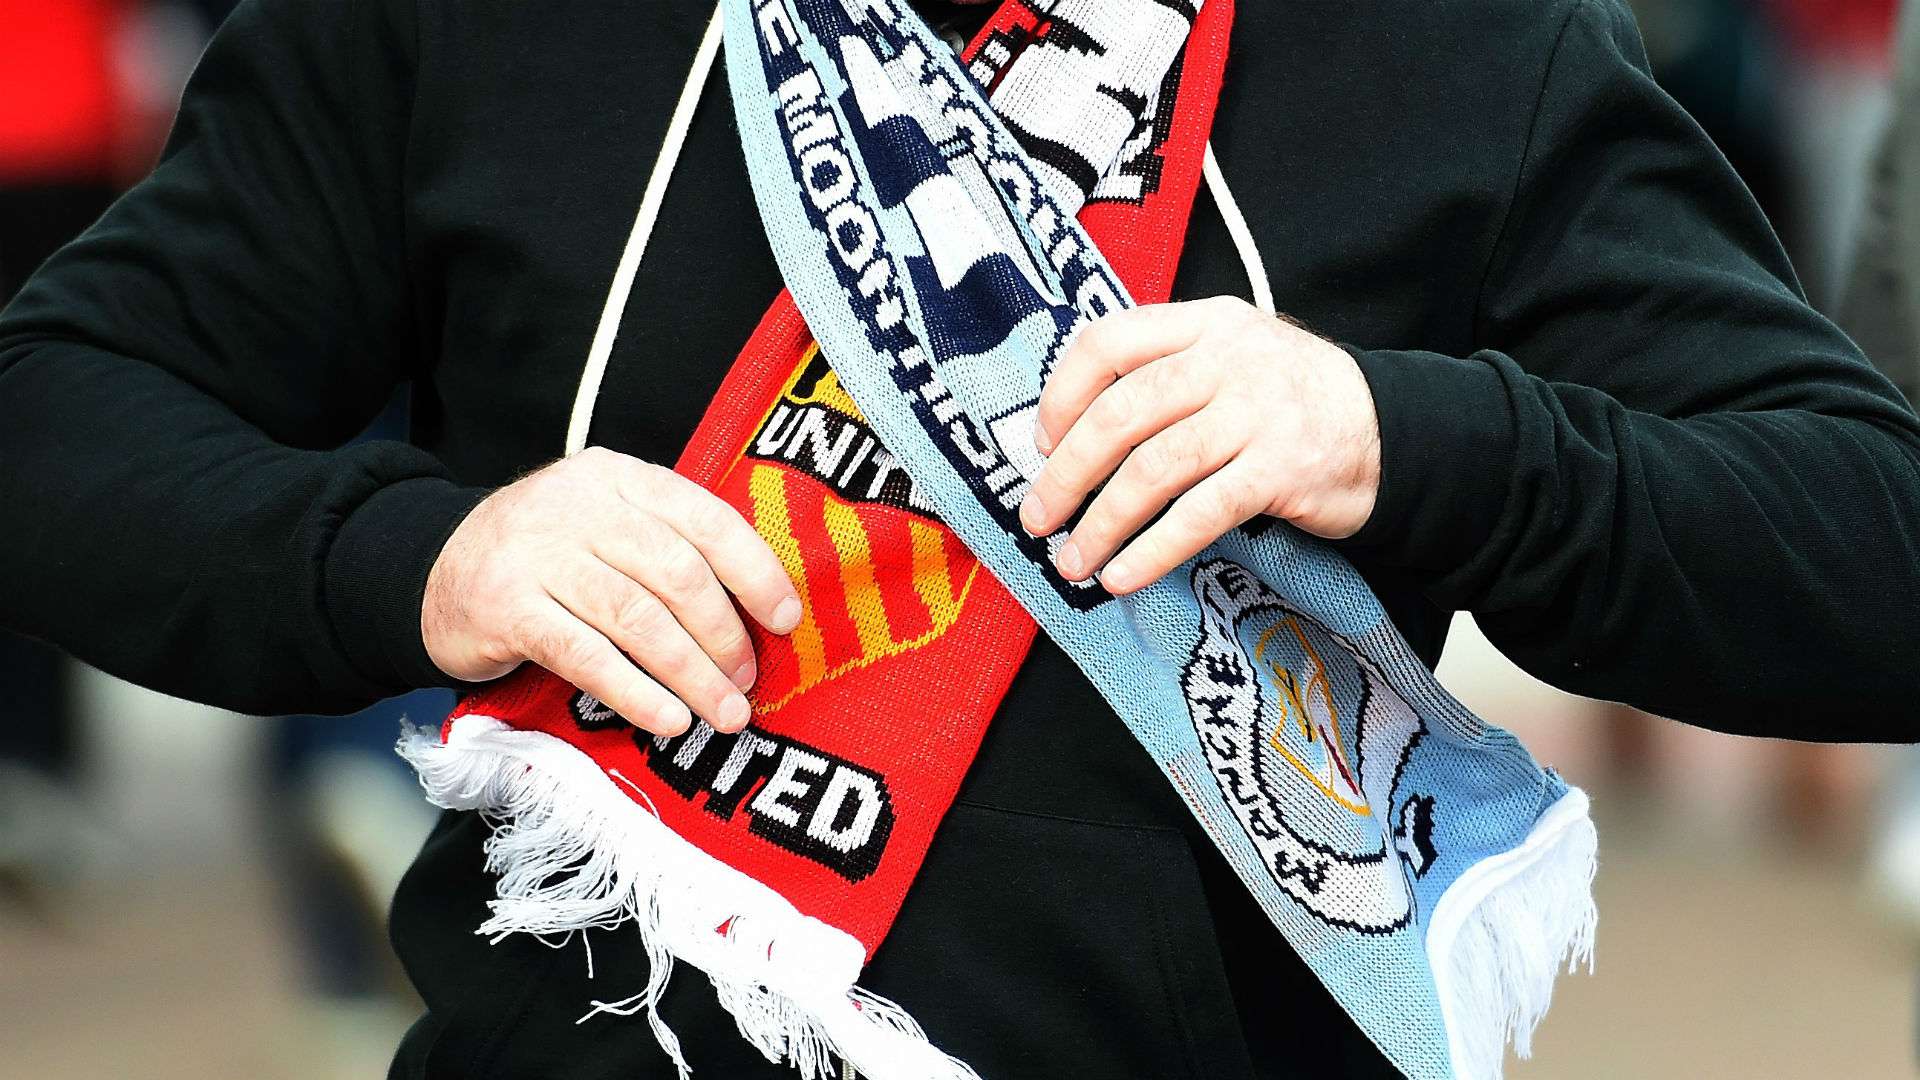 Manchester derby scarf